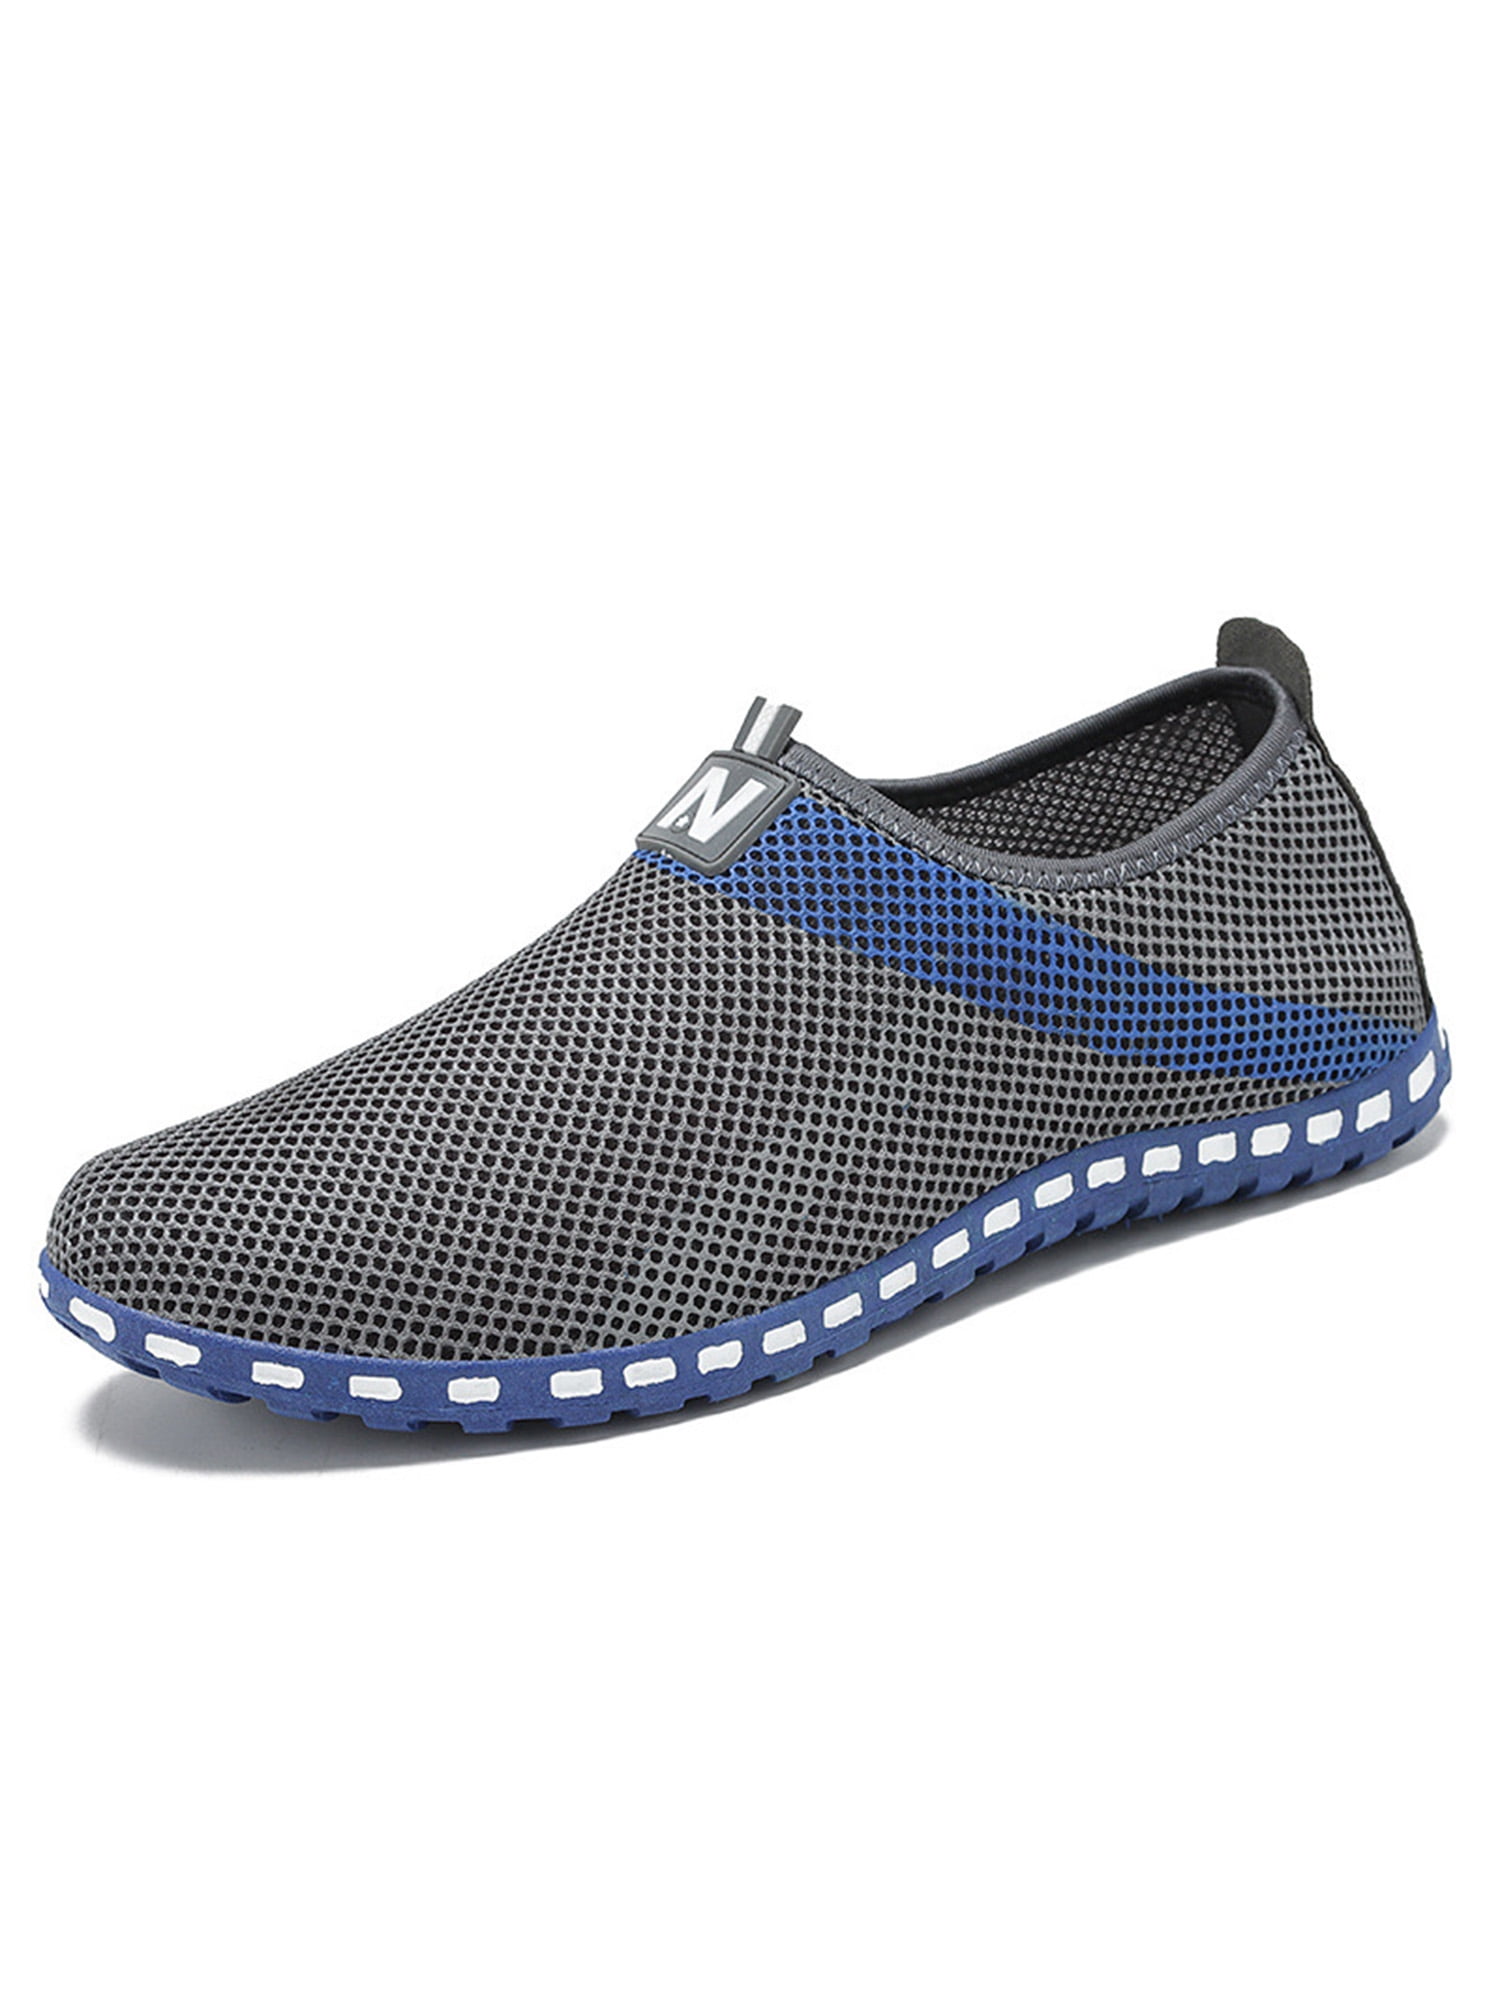 Обувь сетка кроссовки. Jx22s-232-1 обувь с сеткой. Леомакс обувь сетчатая матерчатая обувь мужская. Bambono обувь сетчатая летняя мужская. Туфли в сеточку мужские.